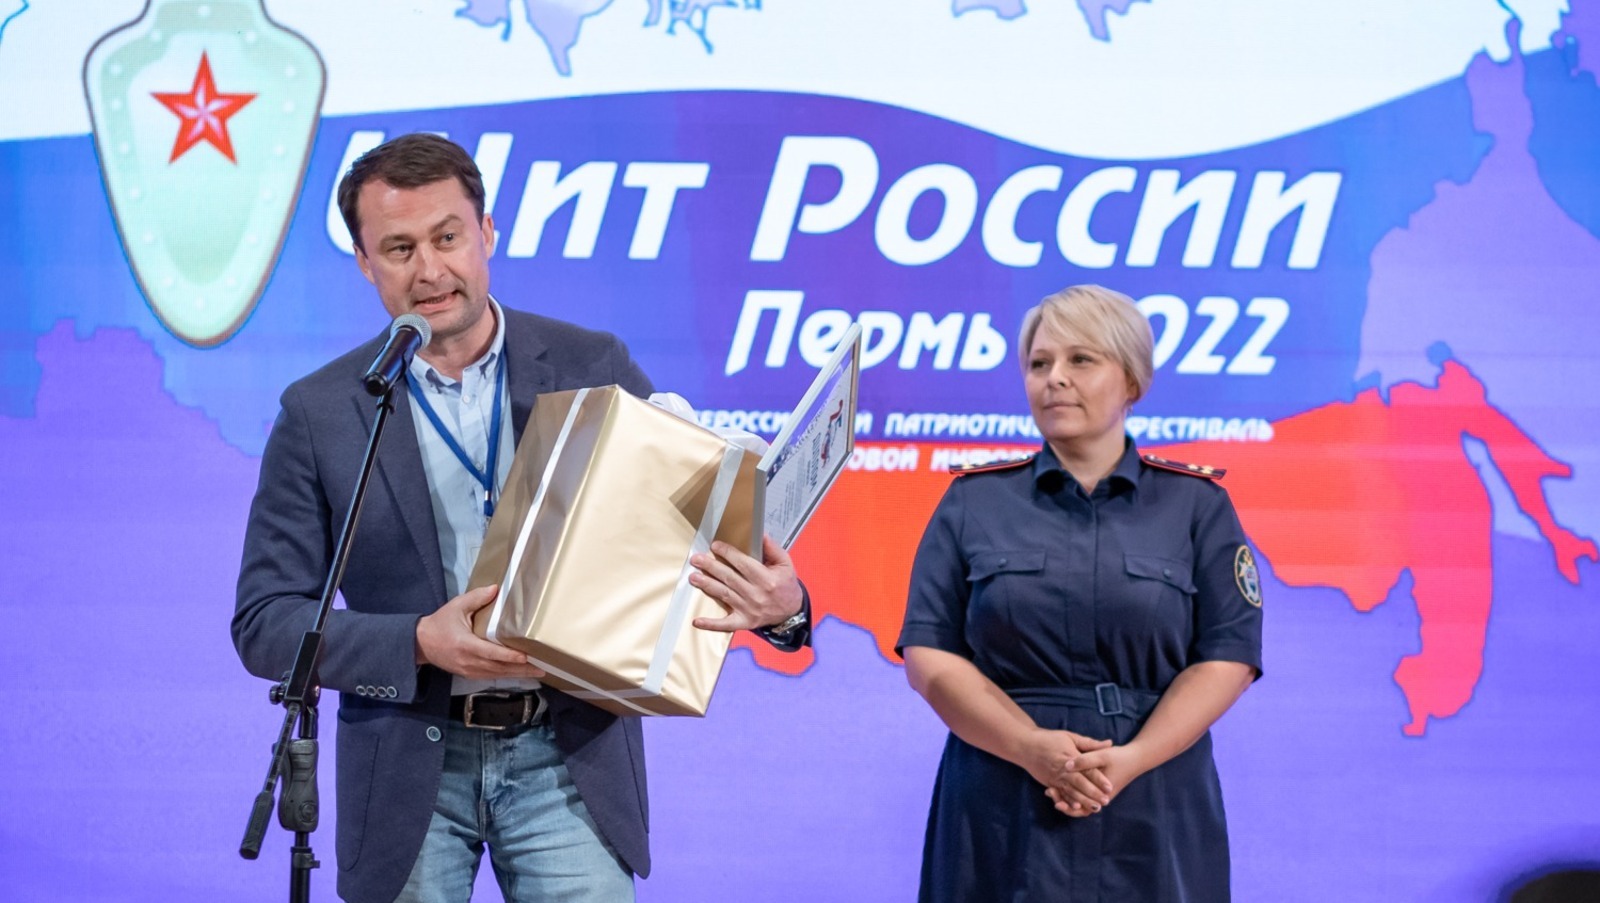 Наша землячка в Перми стала лауреатом Всероссийского фестиваля